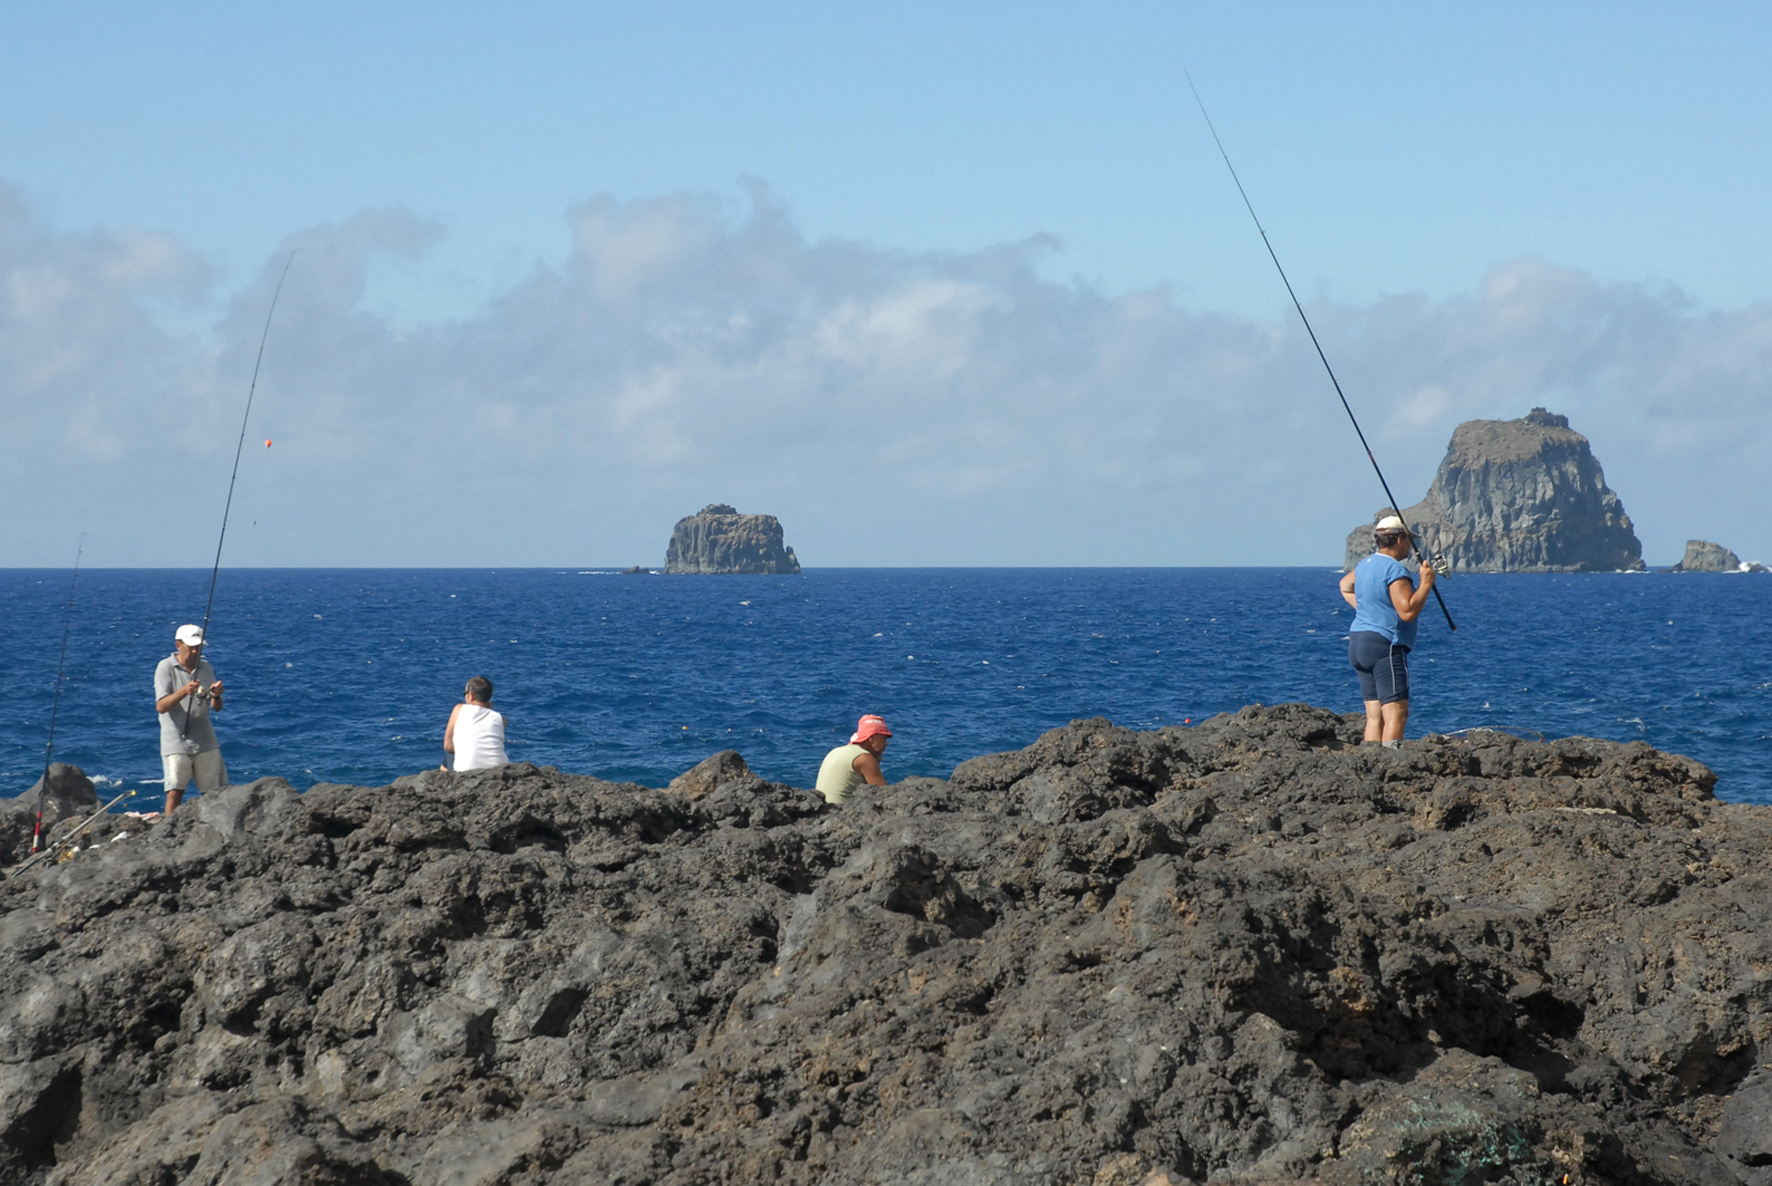 La pesca recreativa muestra la importancia económica del sector en el Parlamento de Canarias